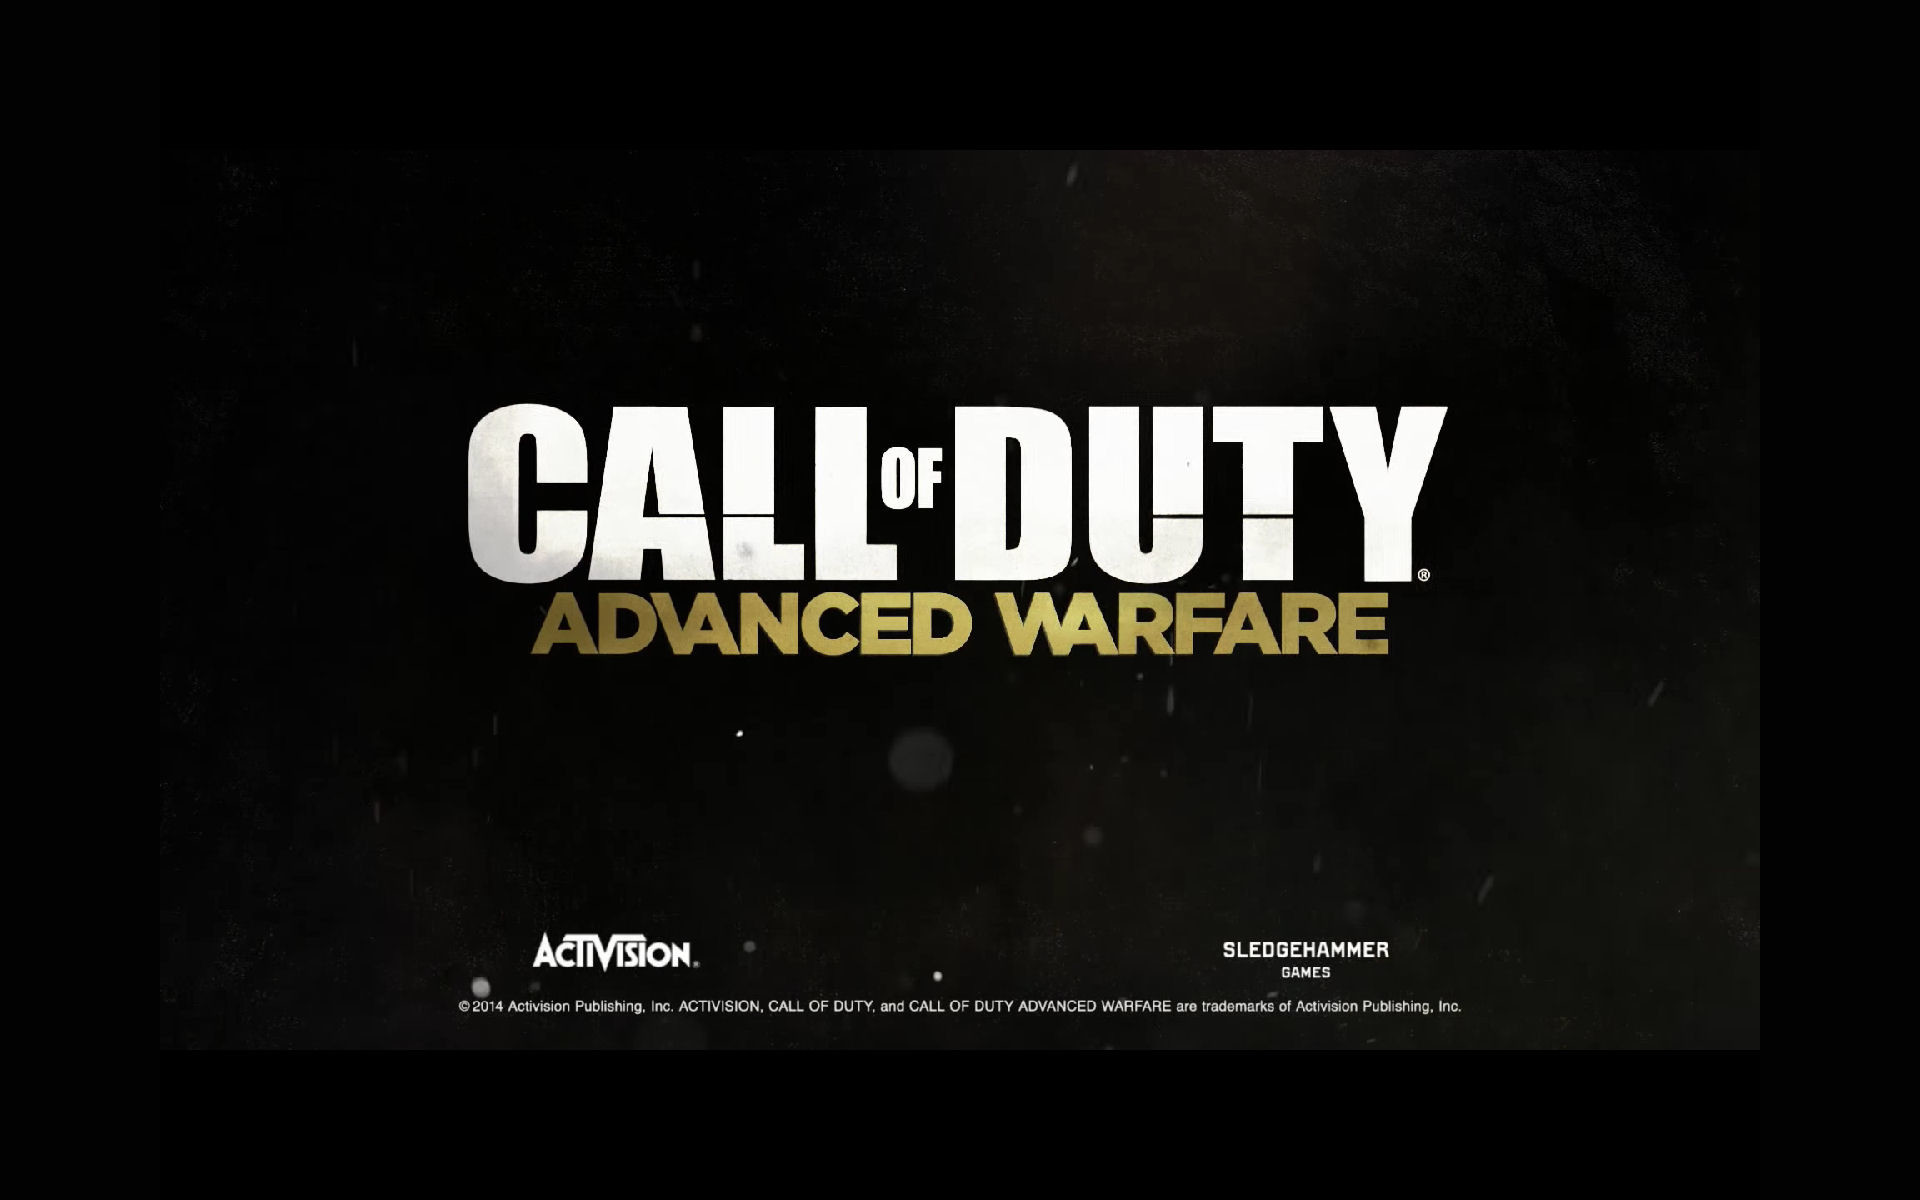 1920x1200 Call of Duty Modern Warfare HD desktop wallpaper : Widescreen 2560Ã1440  Advanced Warfare Wallpaper